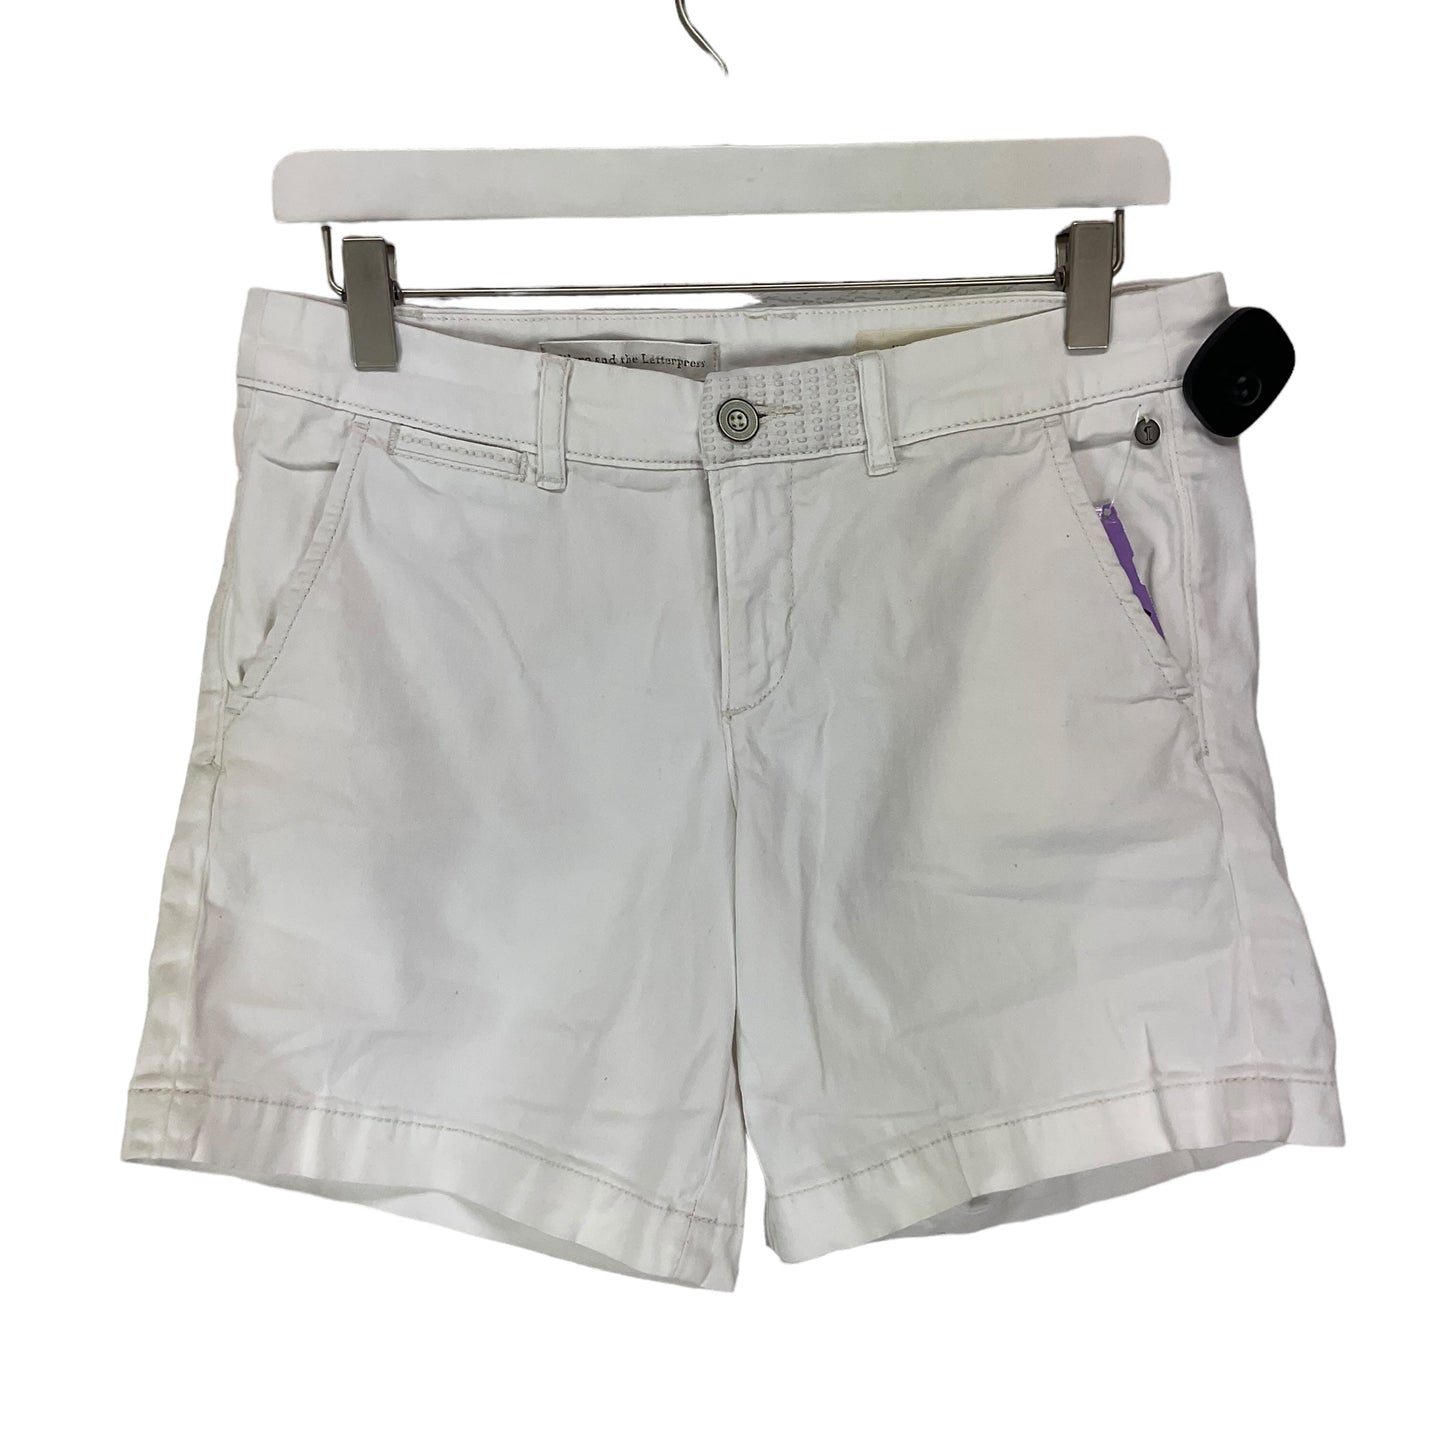 White Shorts Pilcro, Size 4